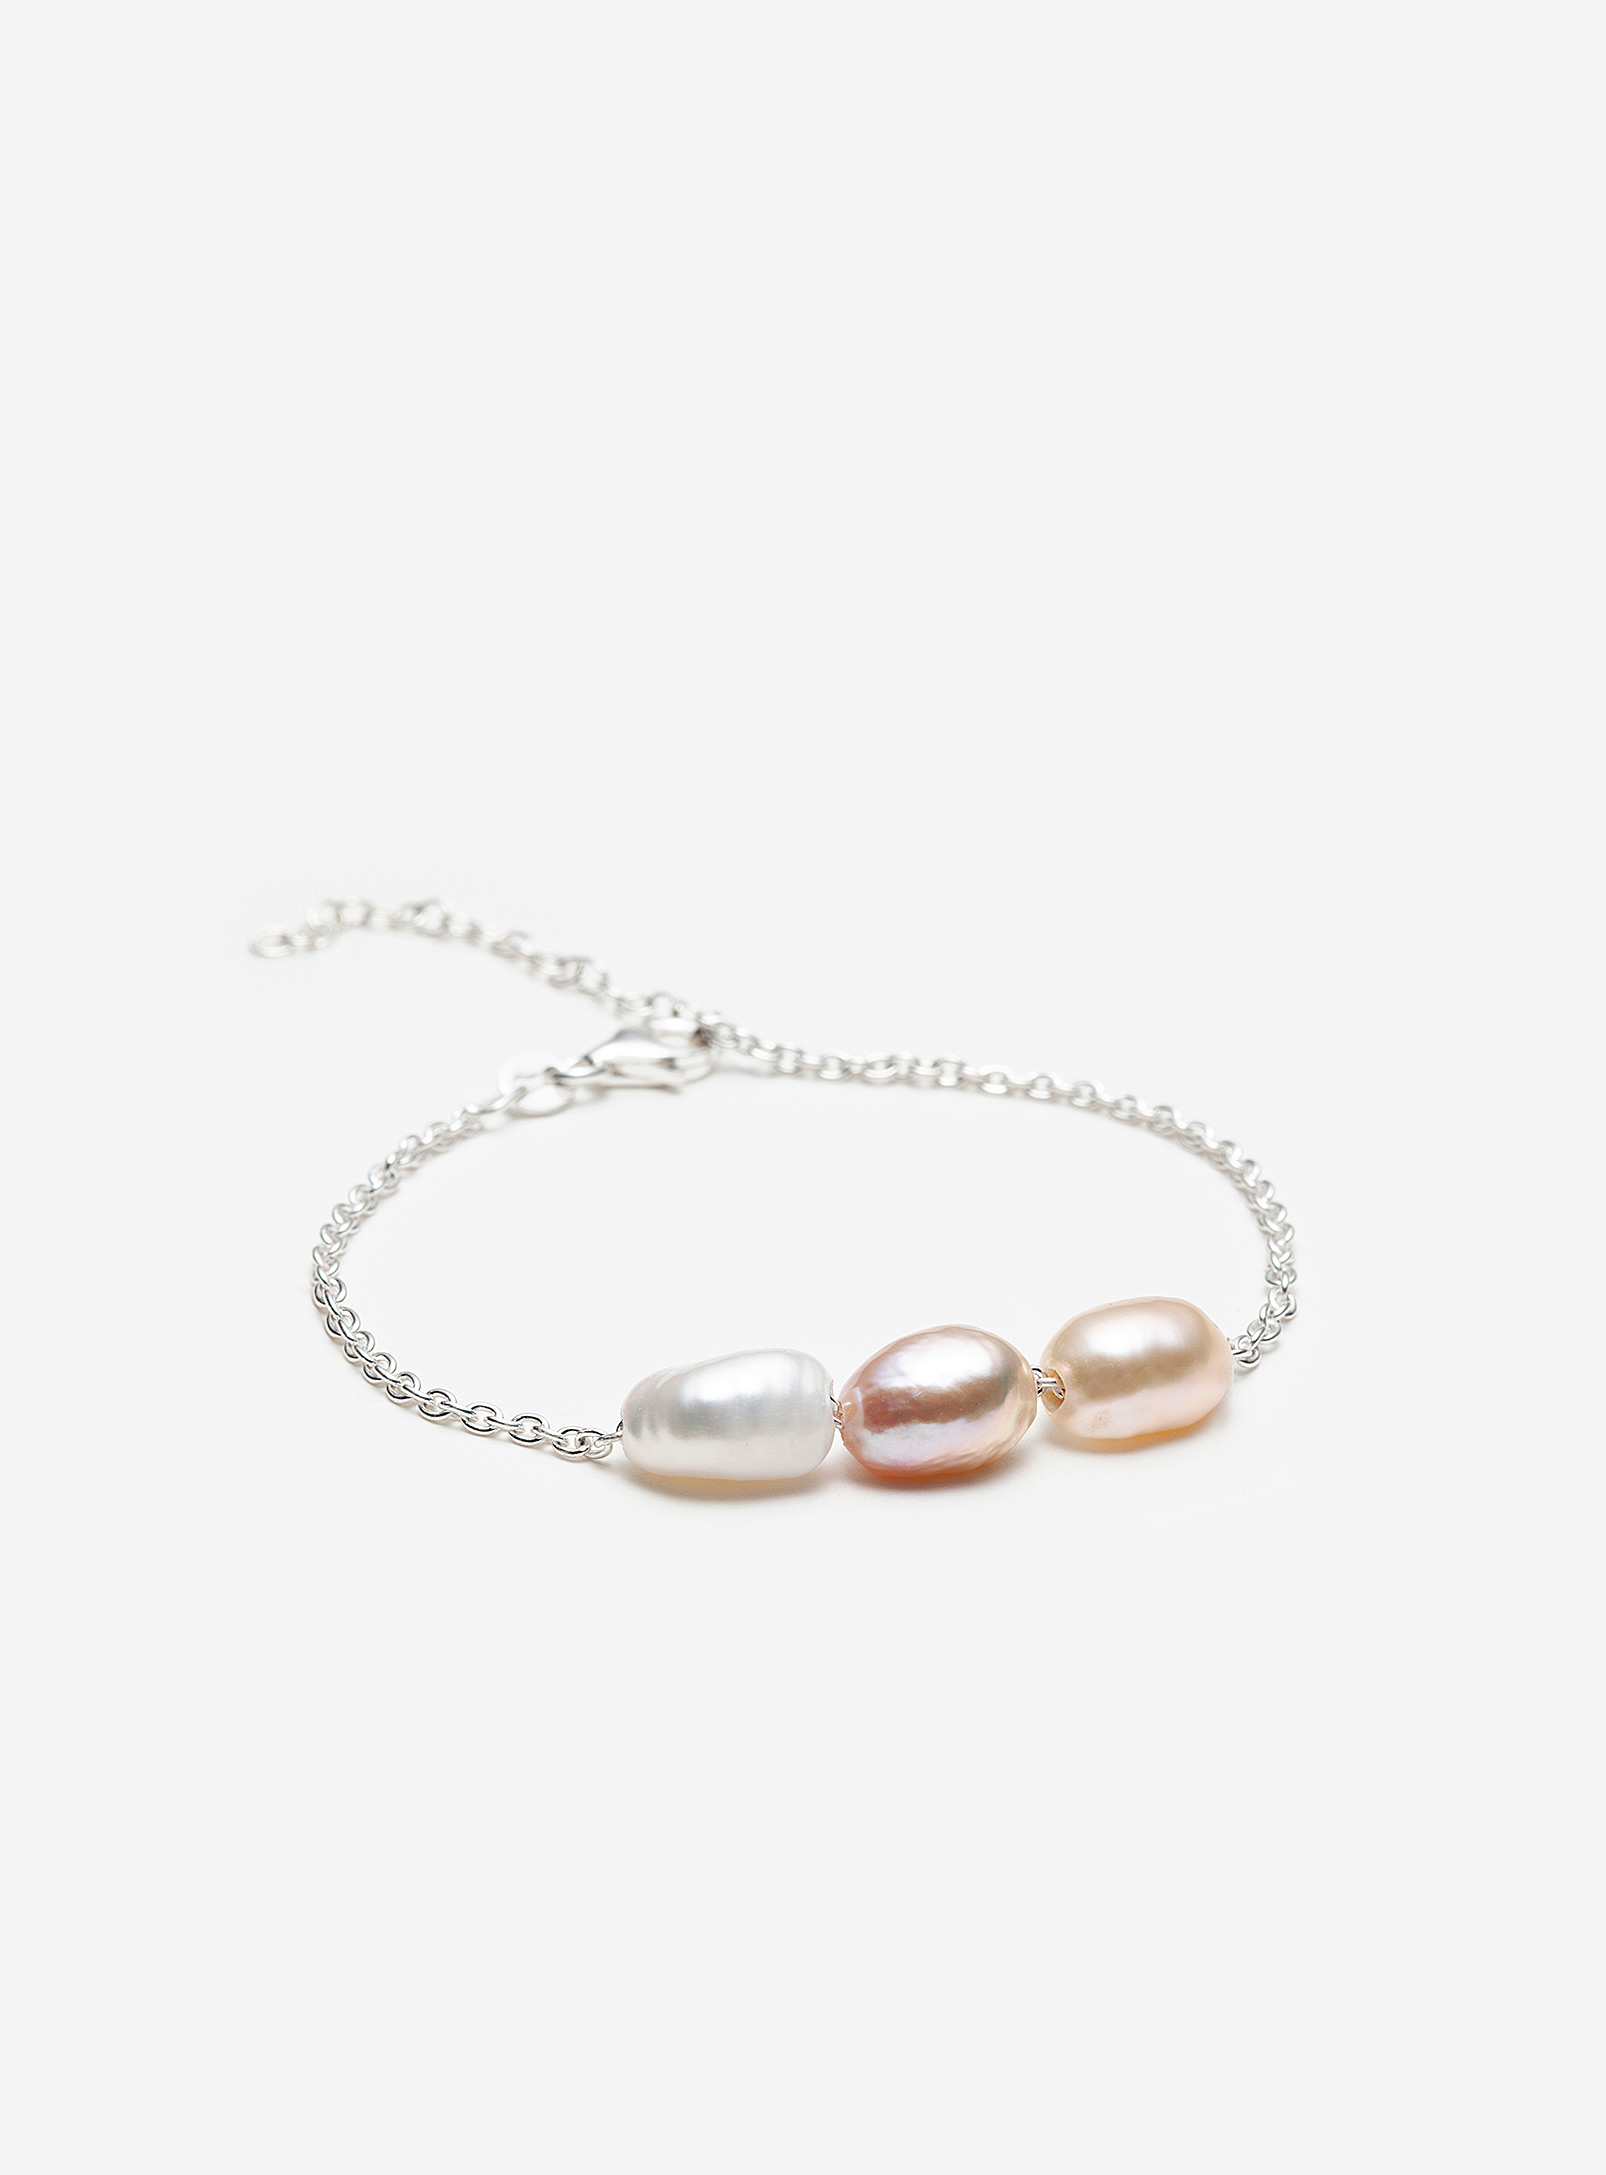 Pilar Agueci - Le bracelet de perles Ares